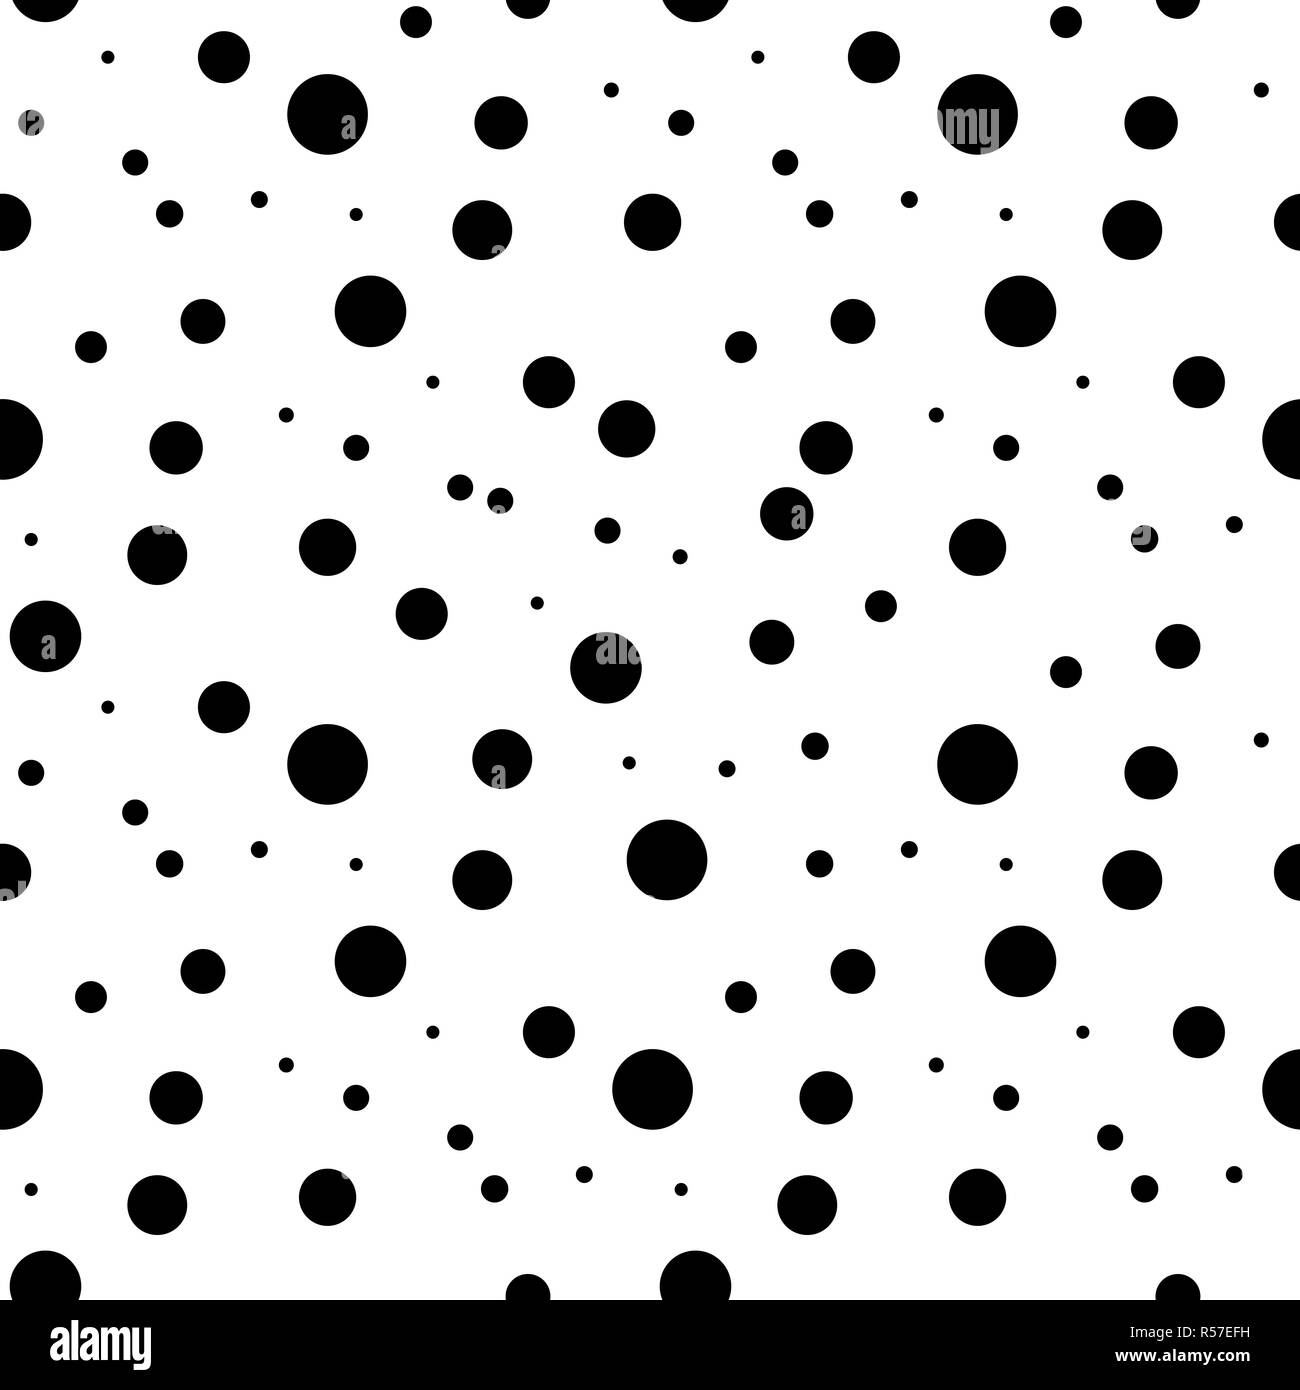 Un motif à pois. Points noirs sur fond blanc. Illustration vecteur eps10. Illustration de Vecteur